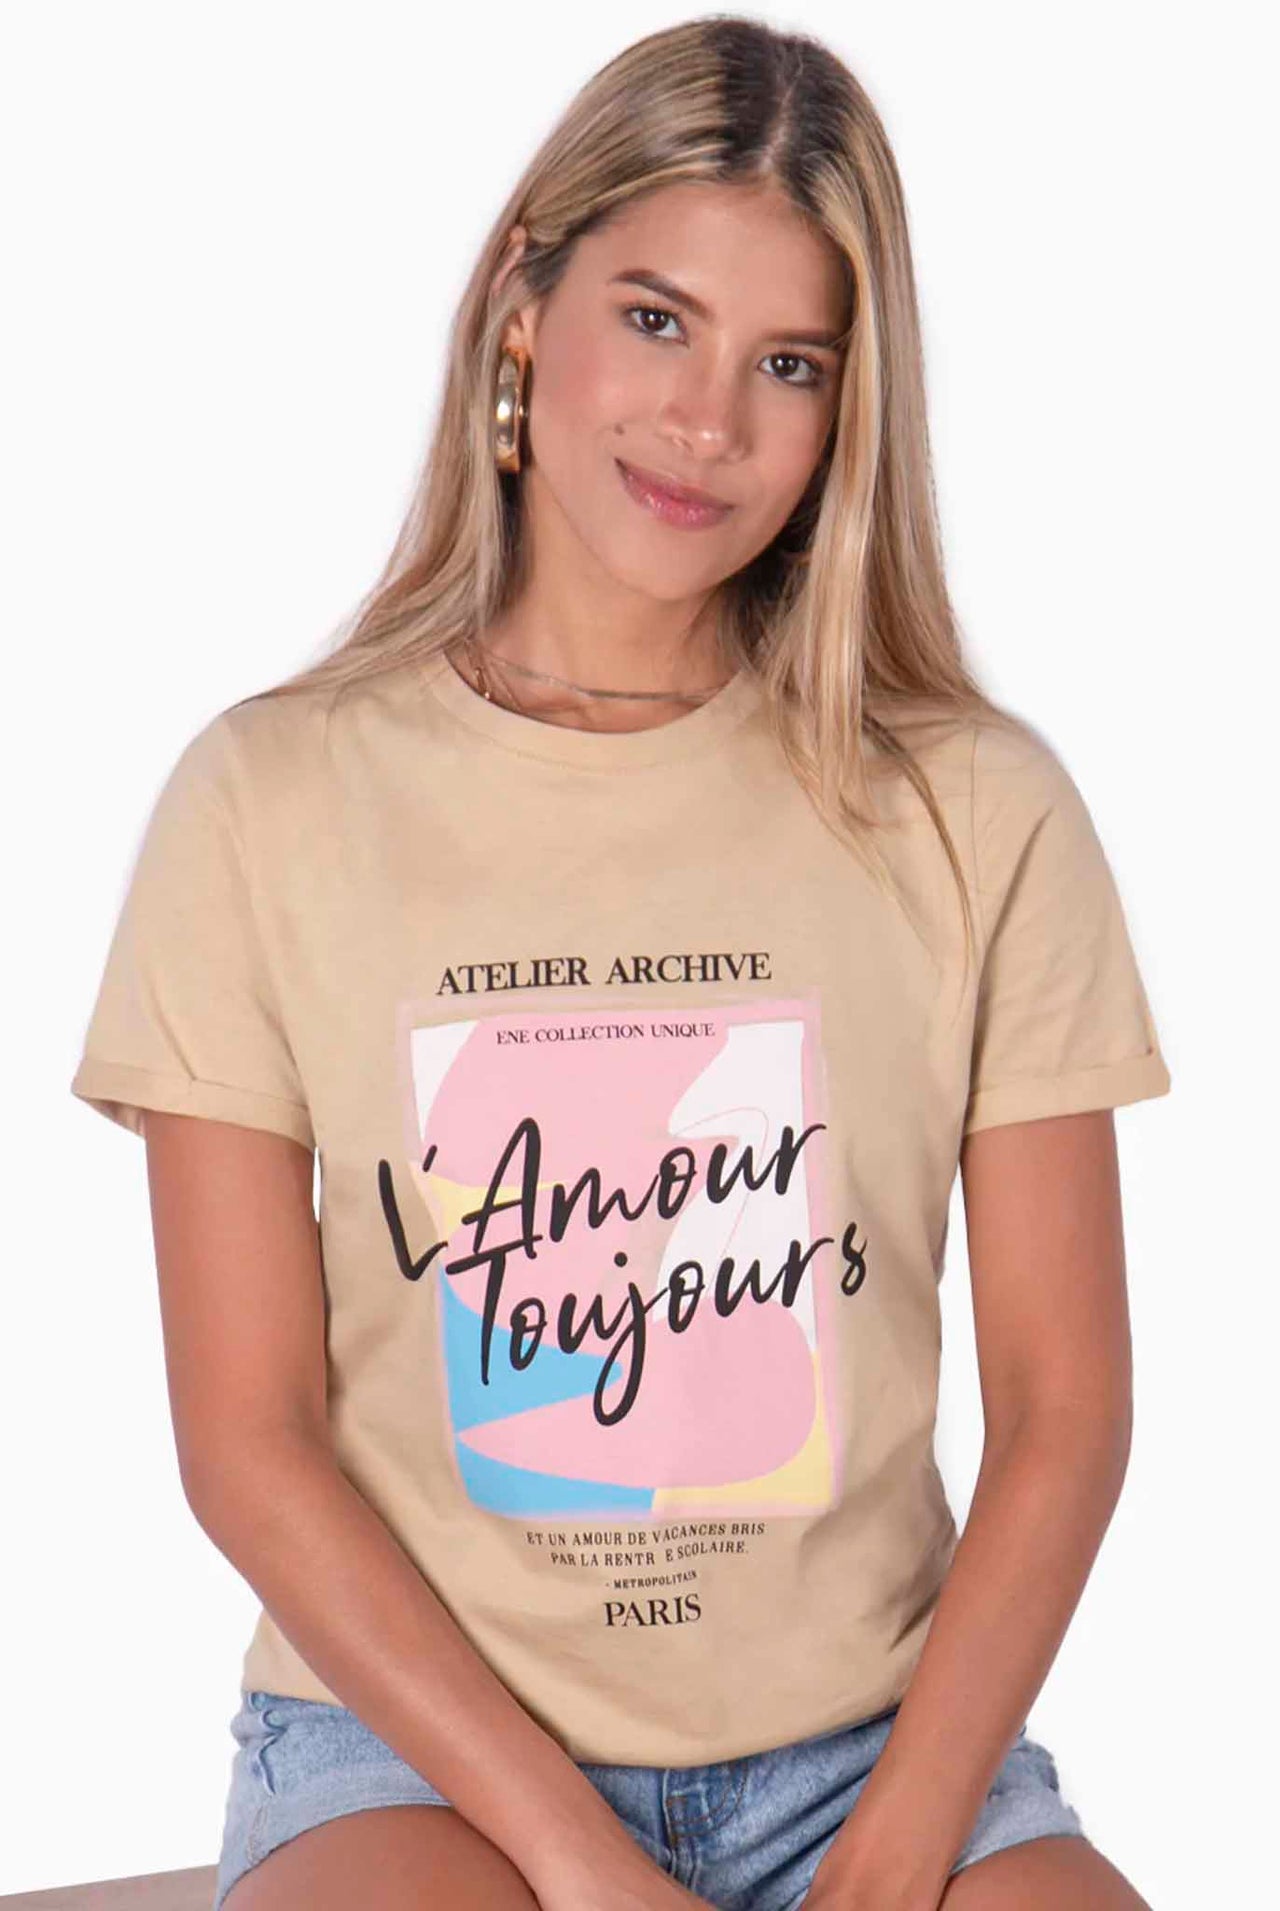 Camiseta Con Estampado "L'AMOUR TOUJOURS" - Gylda